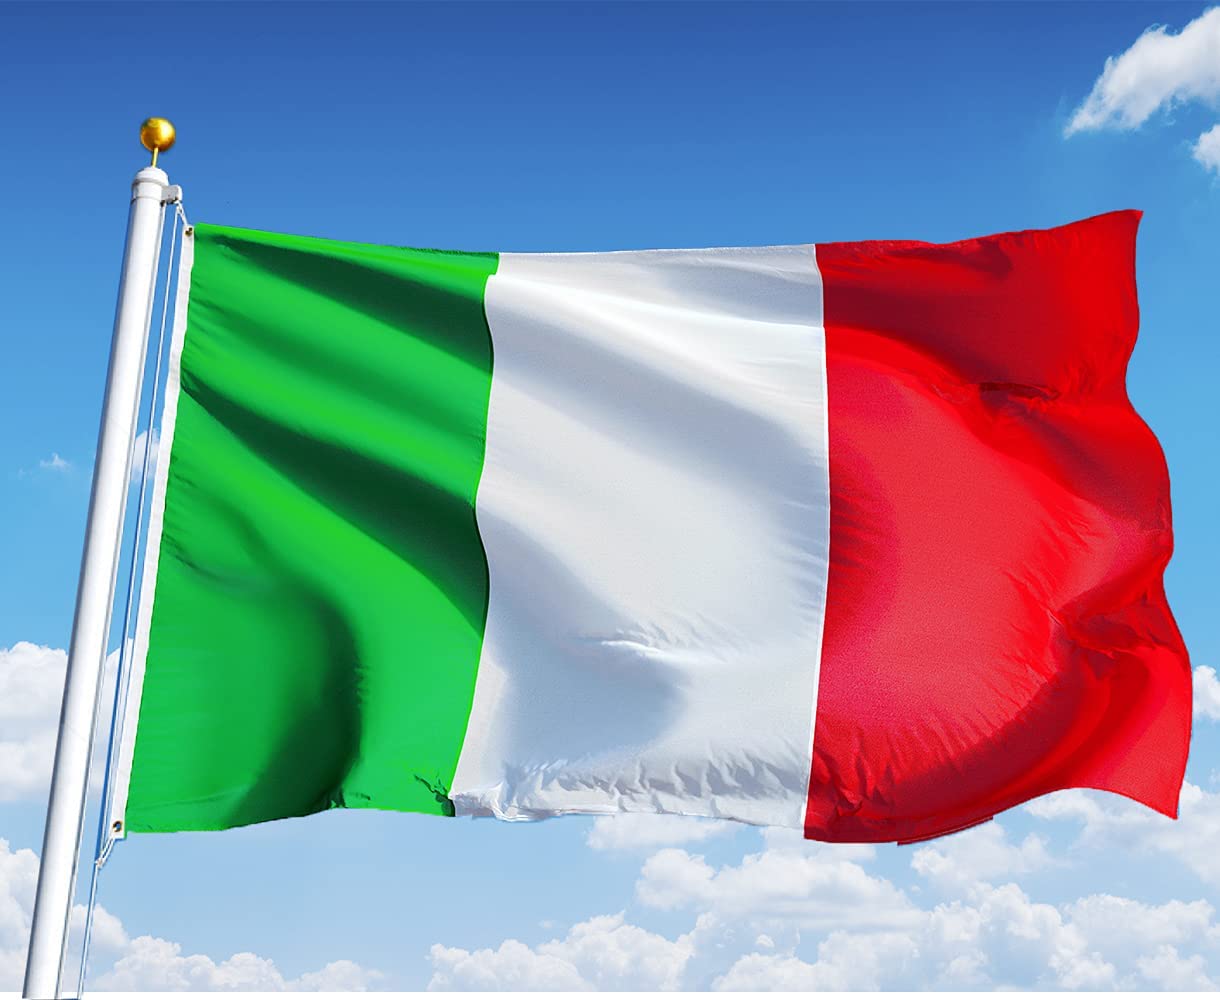 Tricolore, quando nacque la bandiera italiana e il significato dei colori